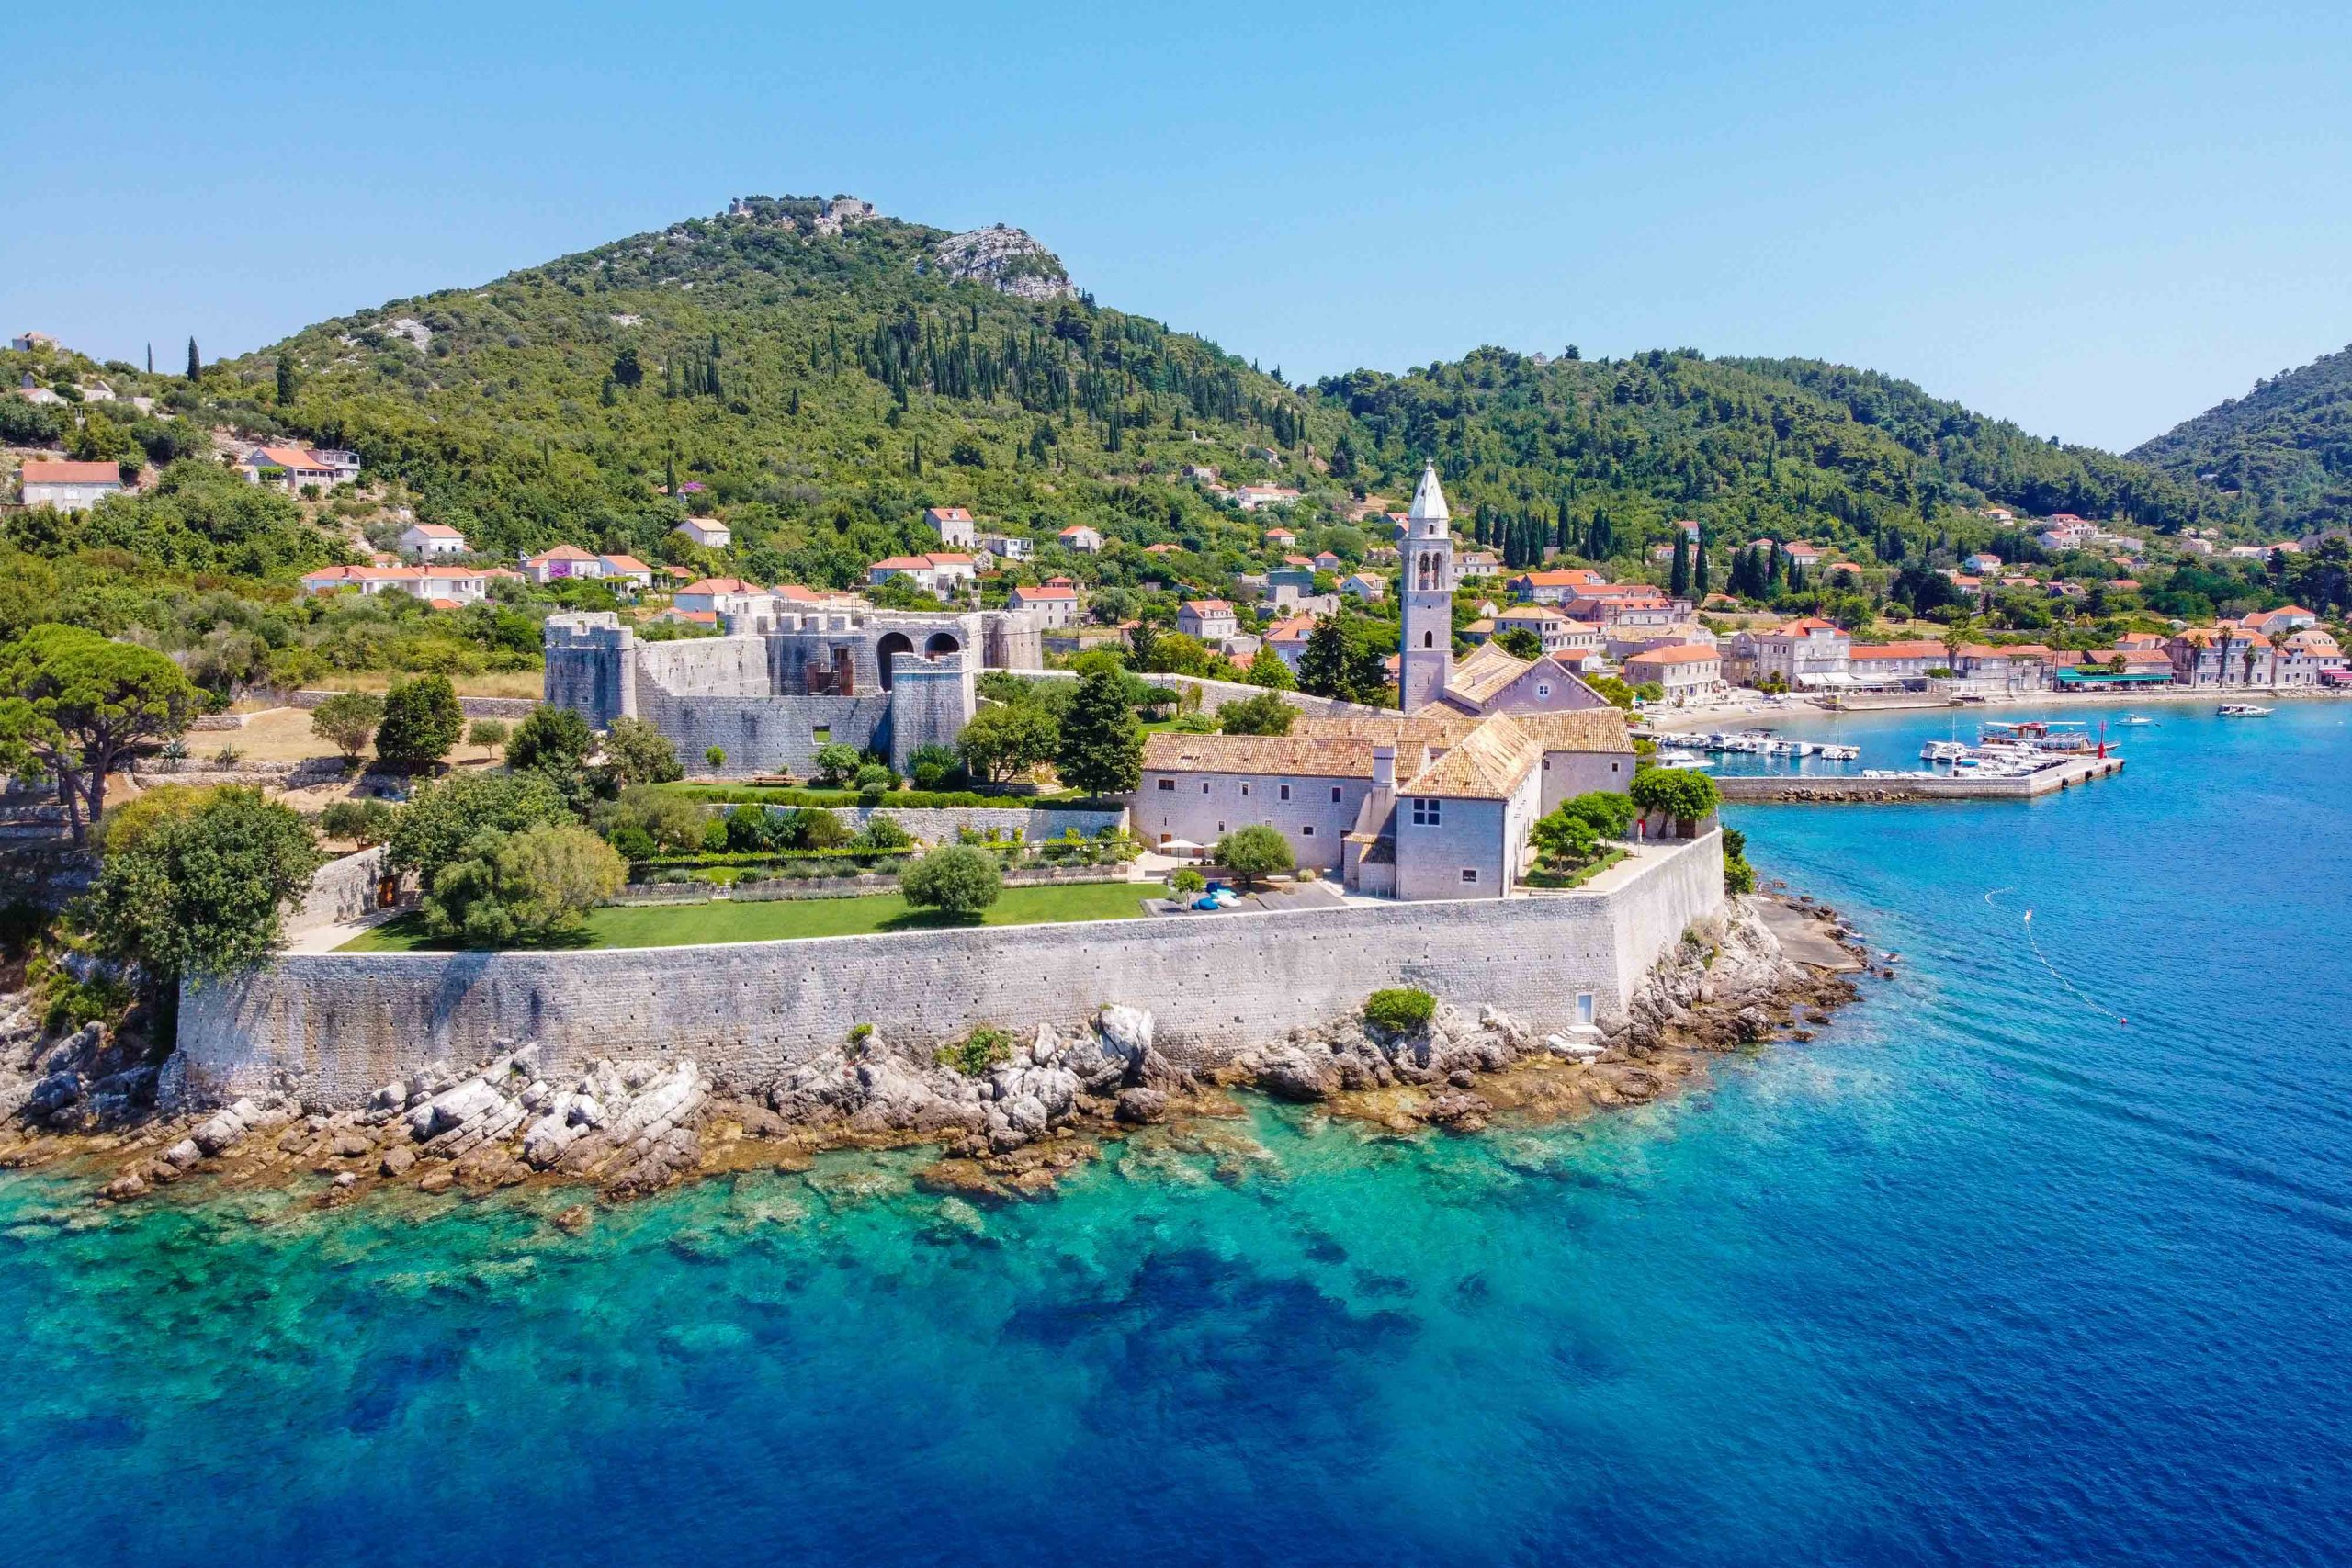 Lopud: The Paradise Island near Dubrovnik - PlacesofJuma